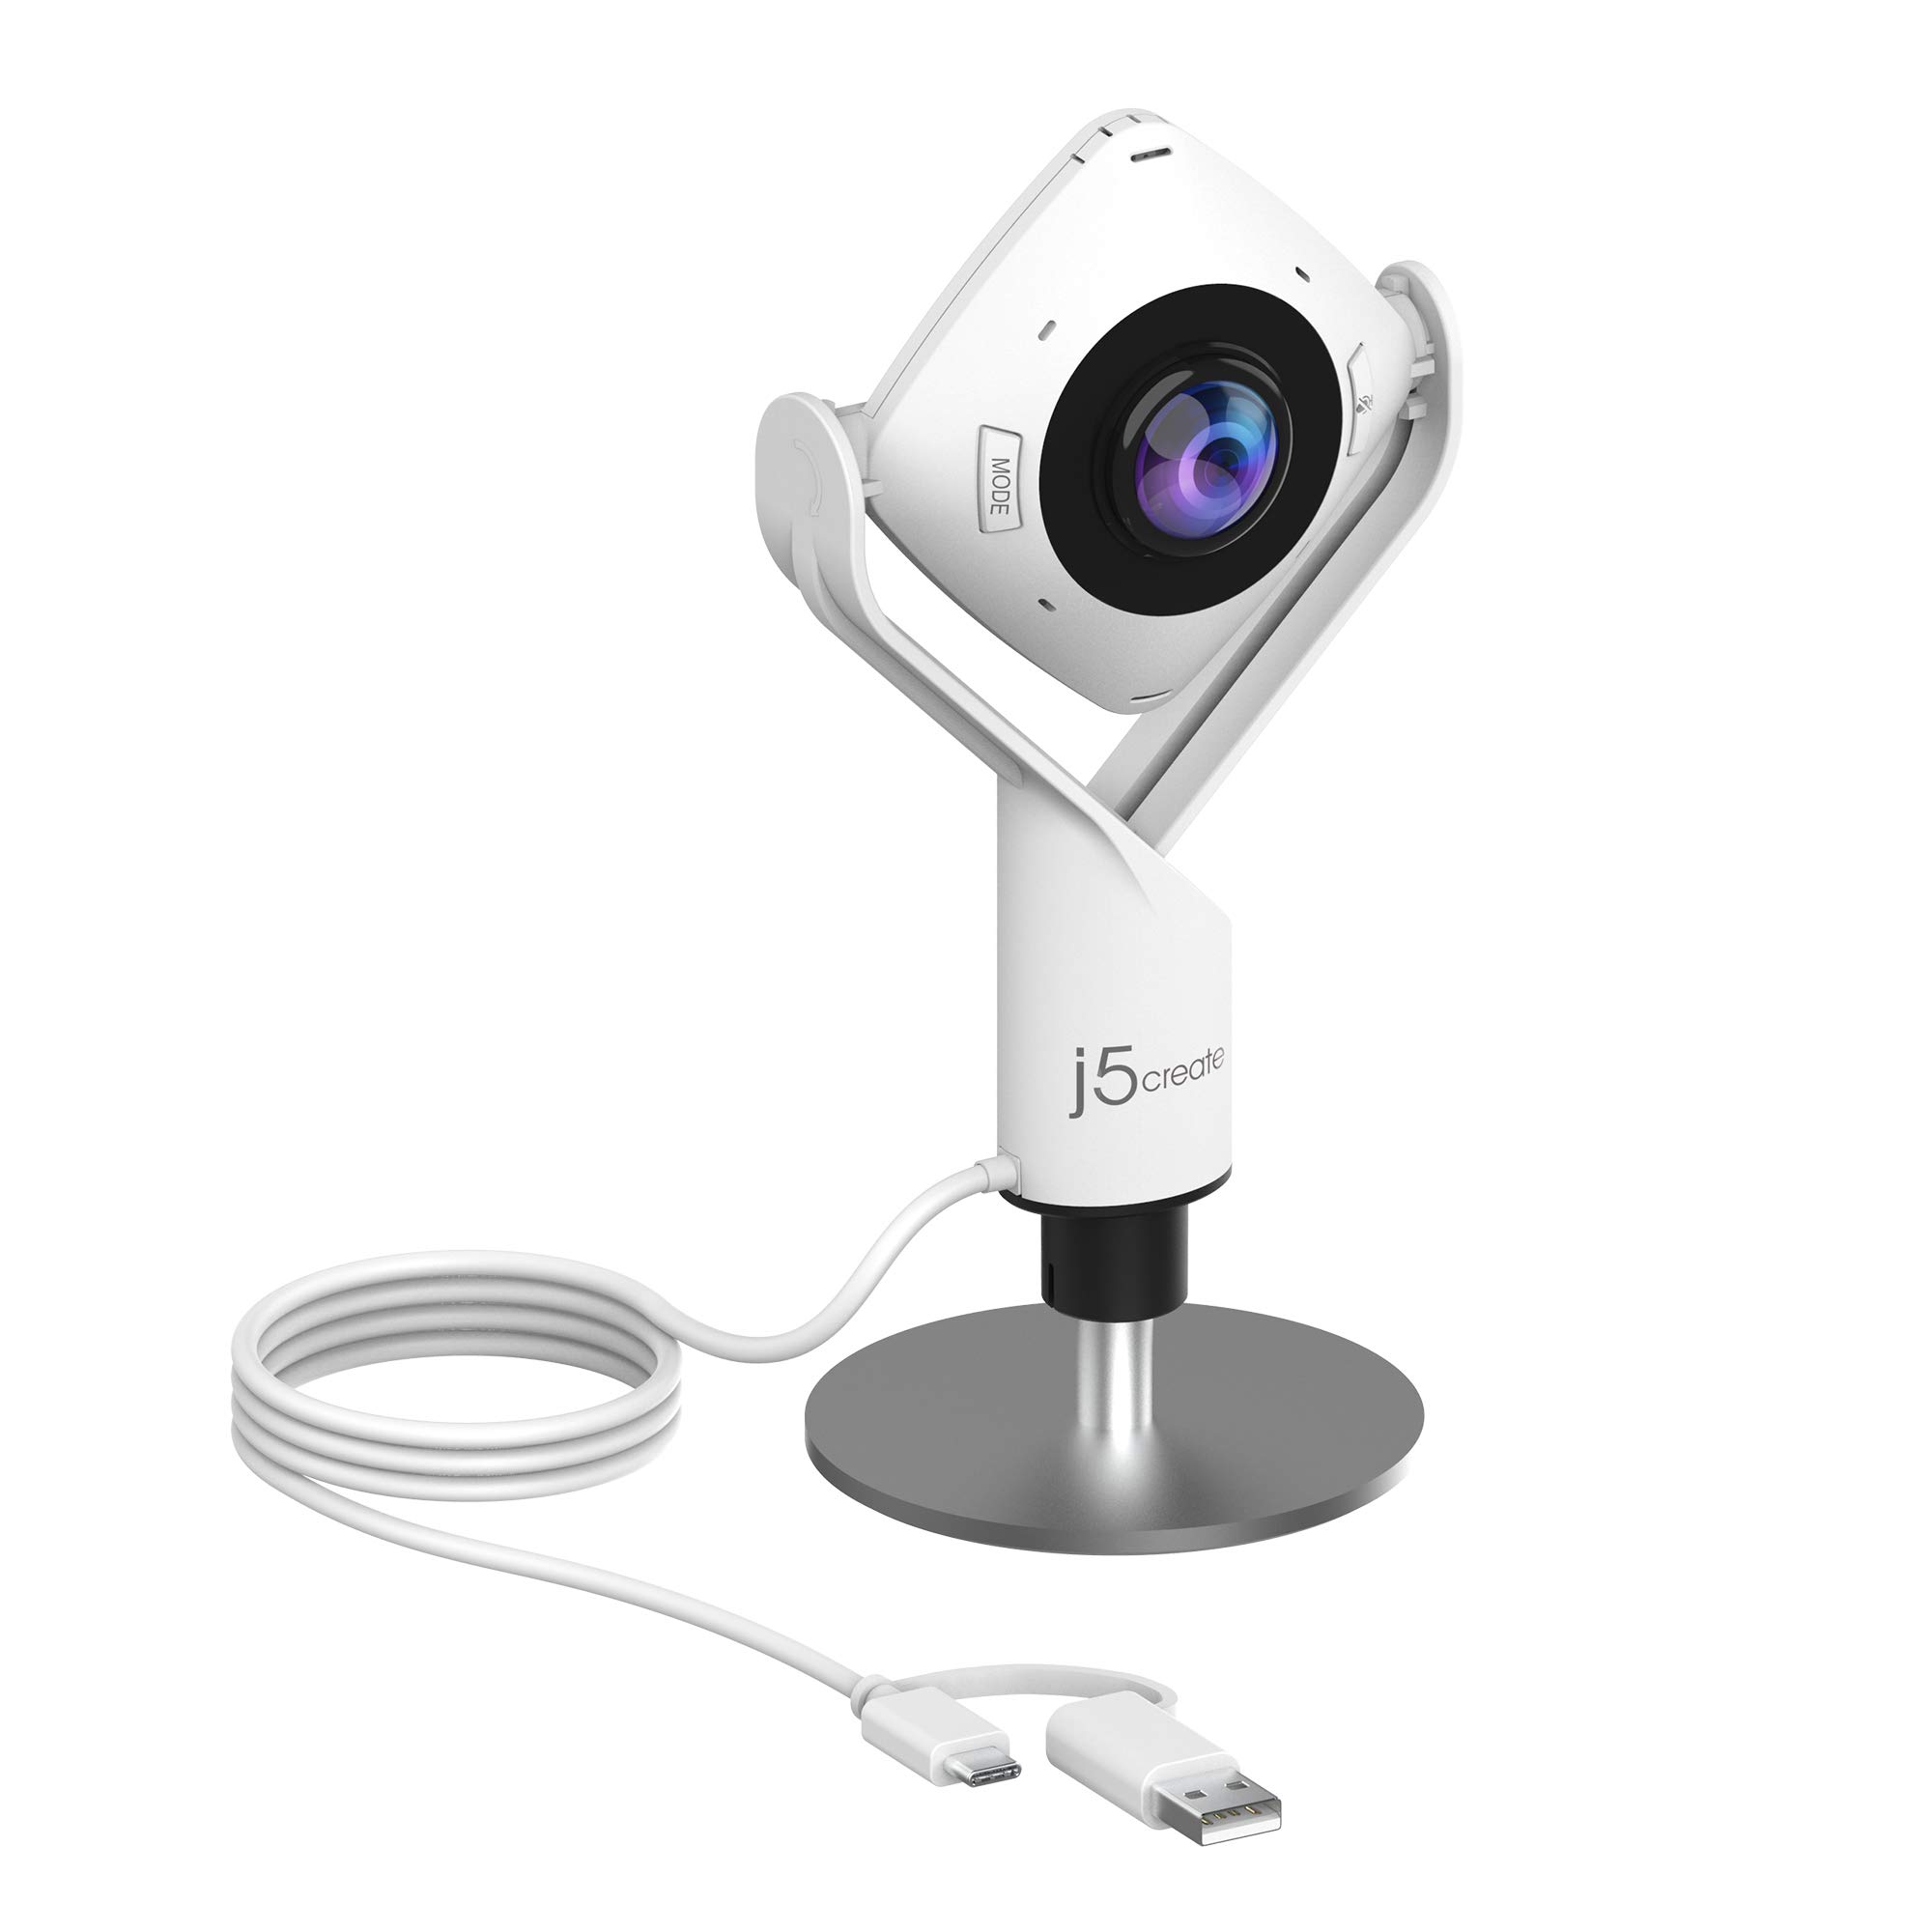 j5create 360 度全方位会议网络摄像头 - 1080P 高清视频会议摄像头，带高保真麦克风，USB-C |用于视频会议、在线课程和协作 (JVCU360)